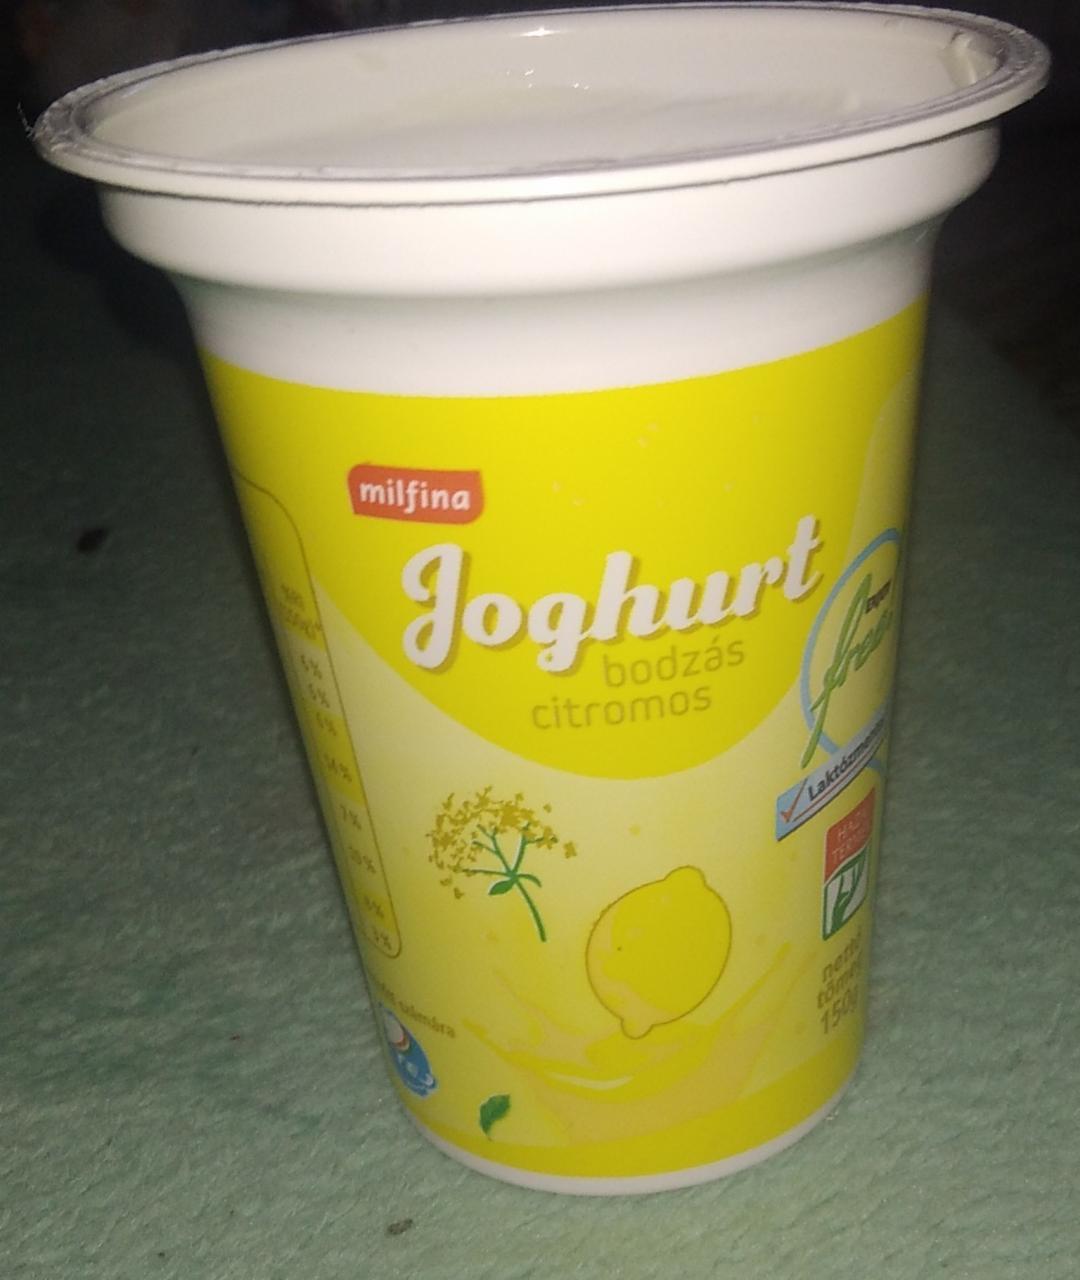 Képek - Bodzás citromos joghurt Milfina